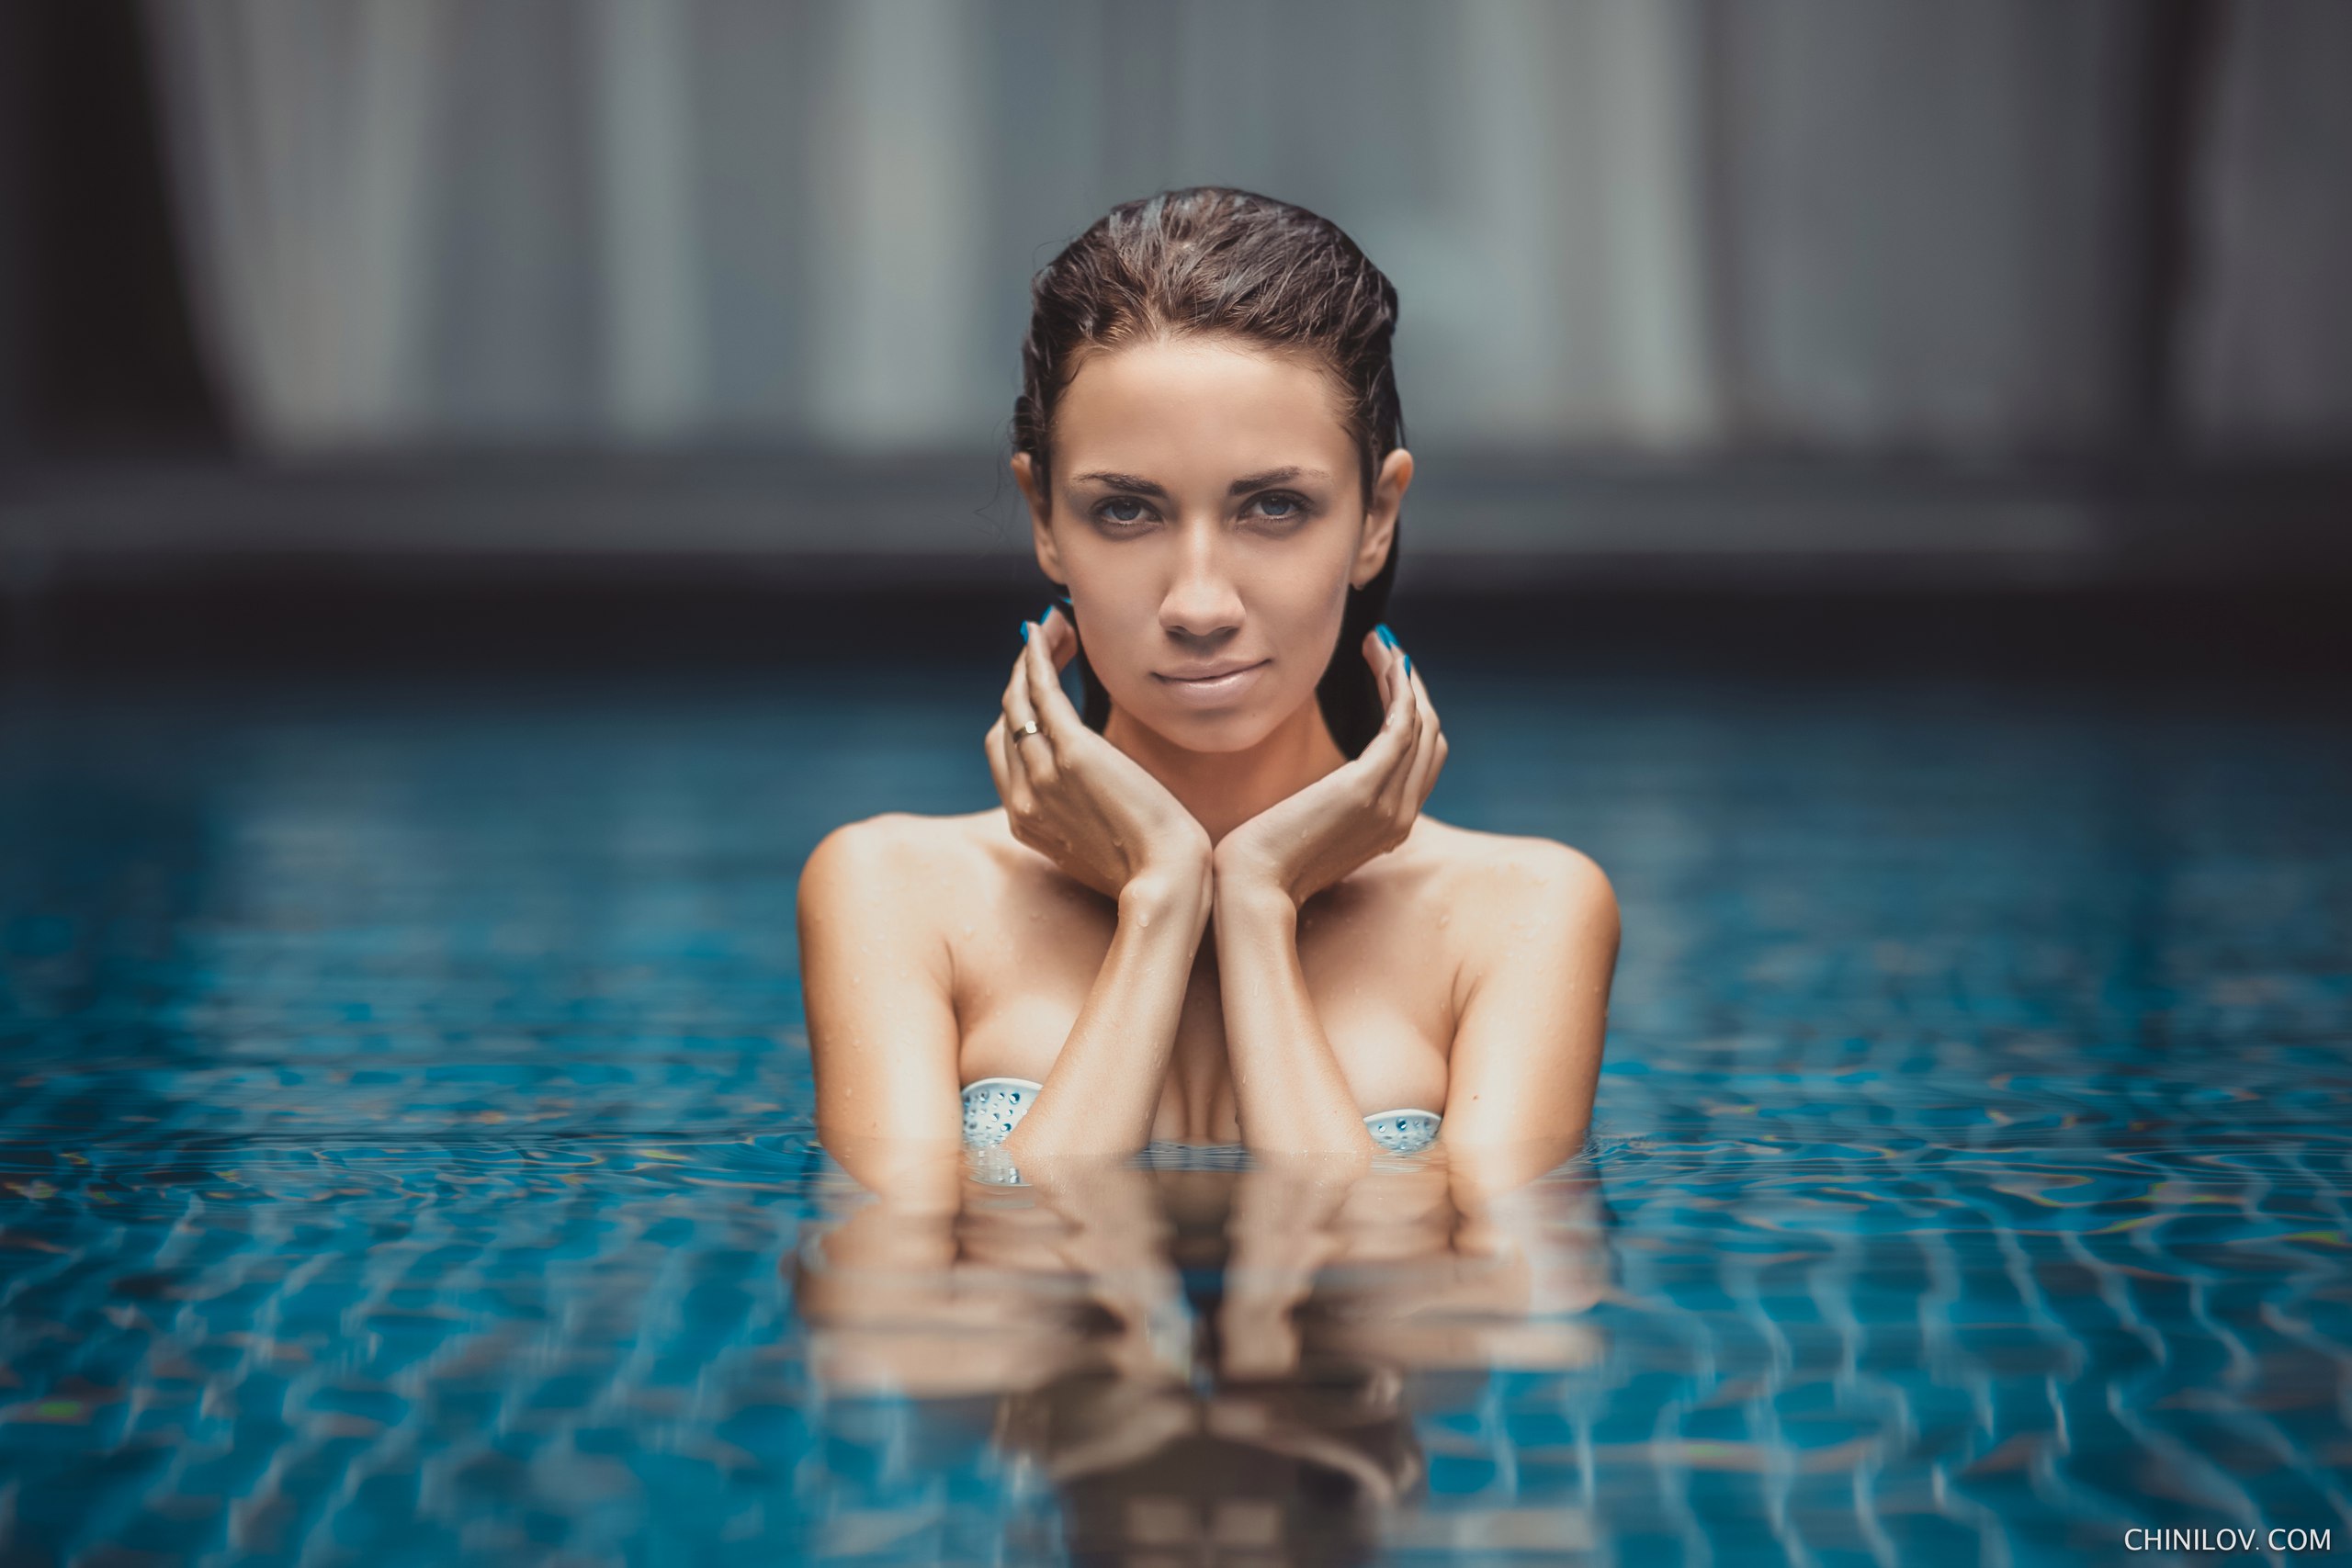 Wallpaper women portrait tanned swimming pool wet body wet hair bikini top depth of field x